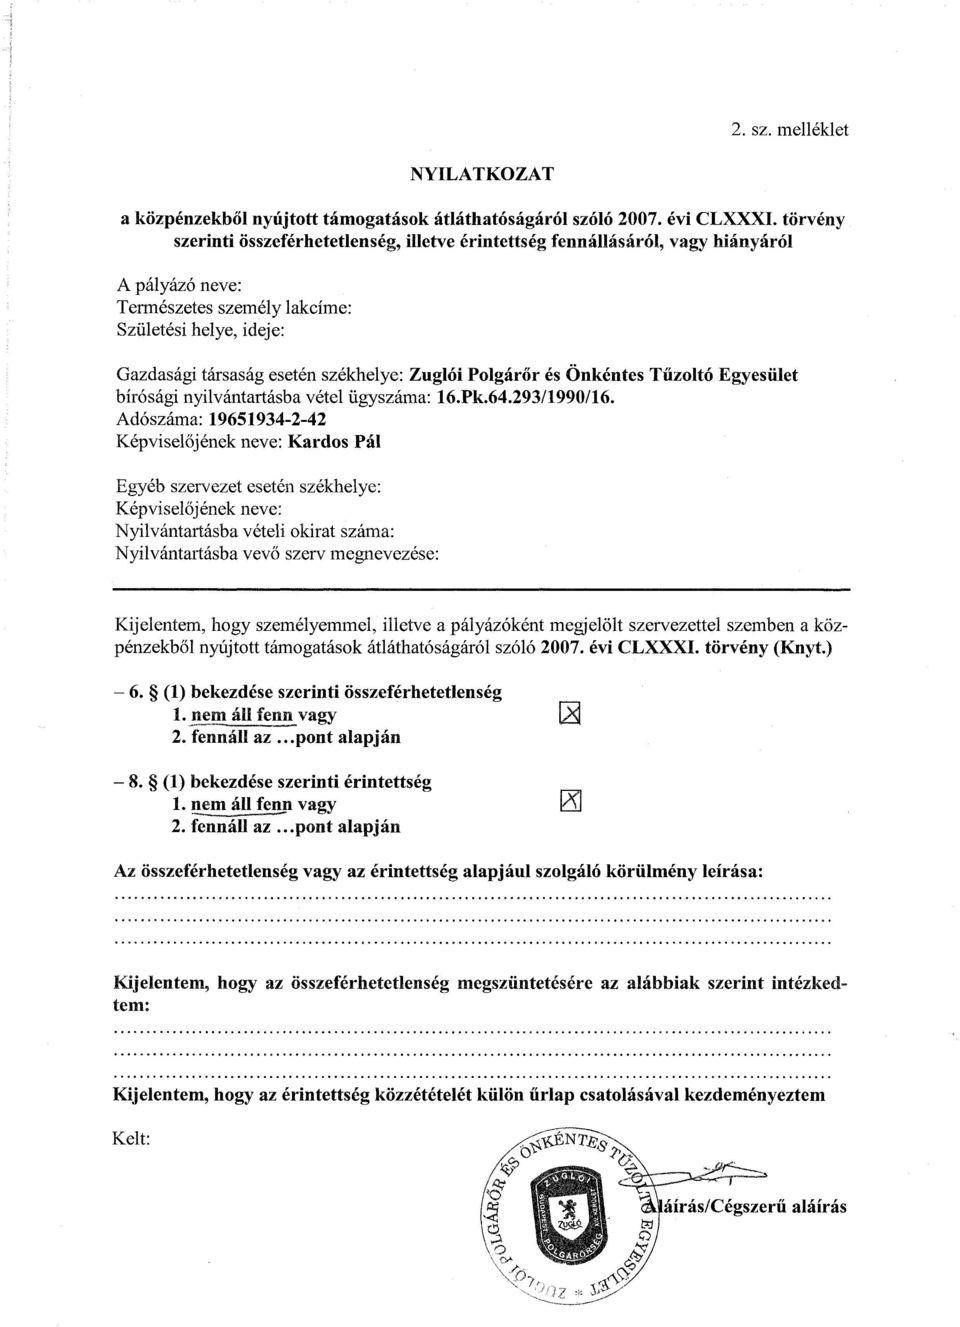 Zuglói Polgárőr és Önkéntes Tűzoltó Egyesület bírósági nyilvántartásba vétel ügyszáma: 16.Pk.64.293/1990/16.